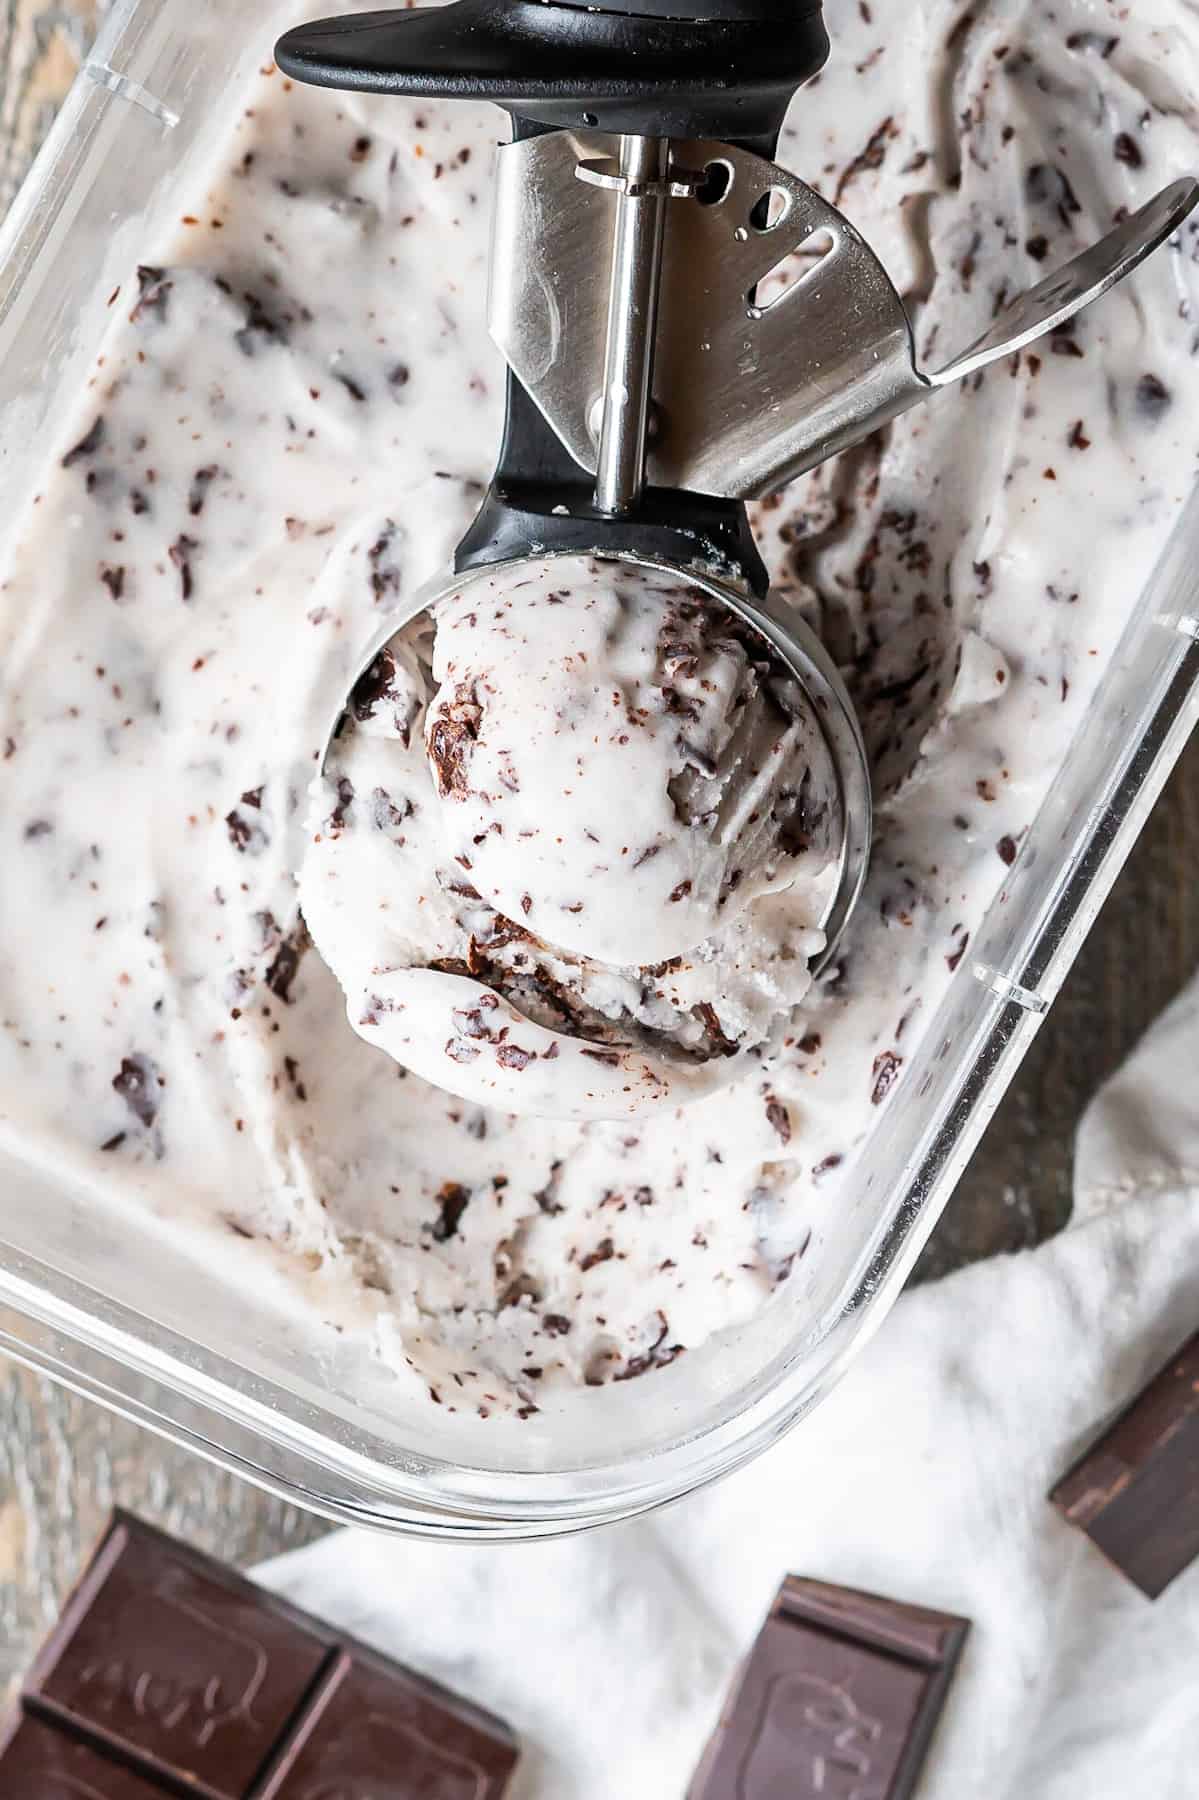 An ice cream scoop of stracciatella vegan gelato resting in the gelato container.